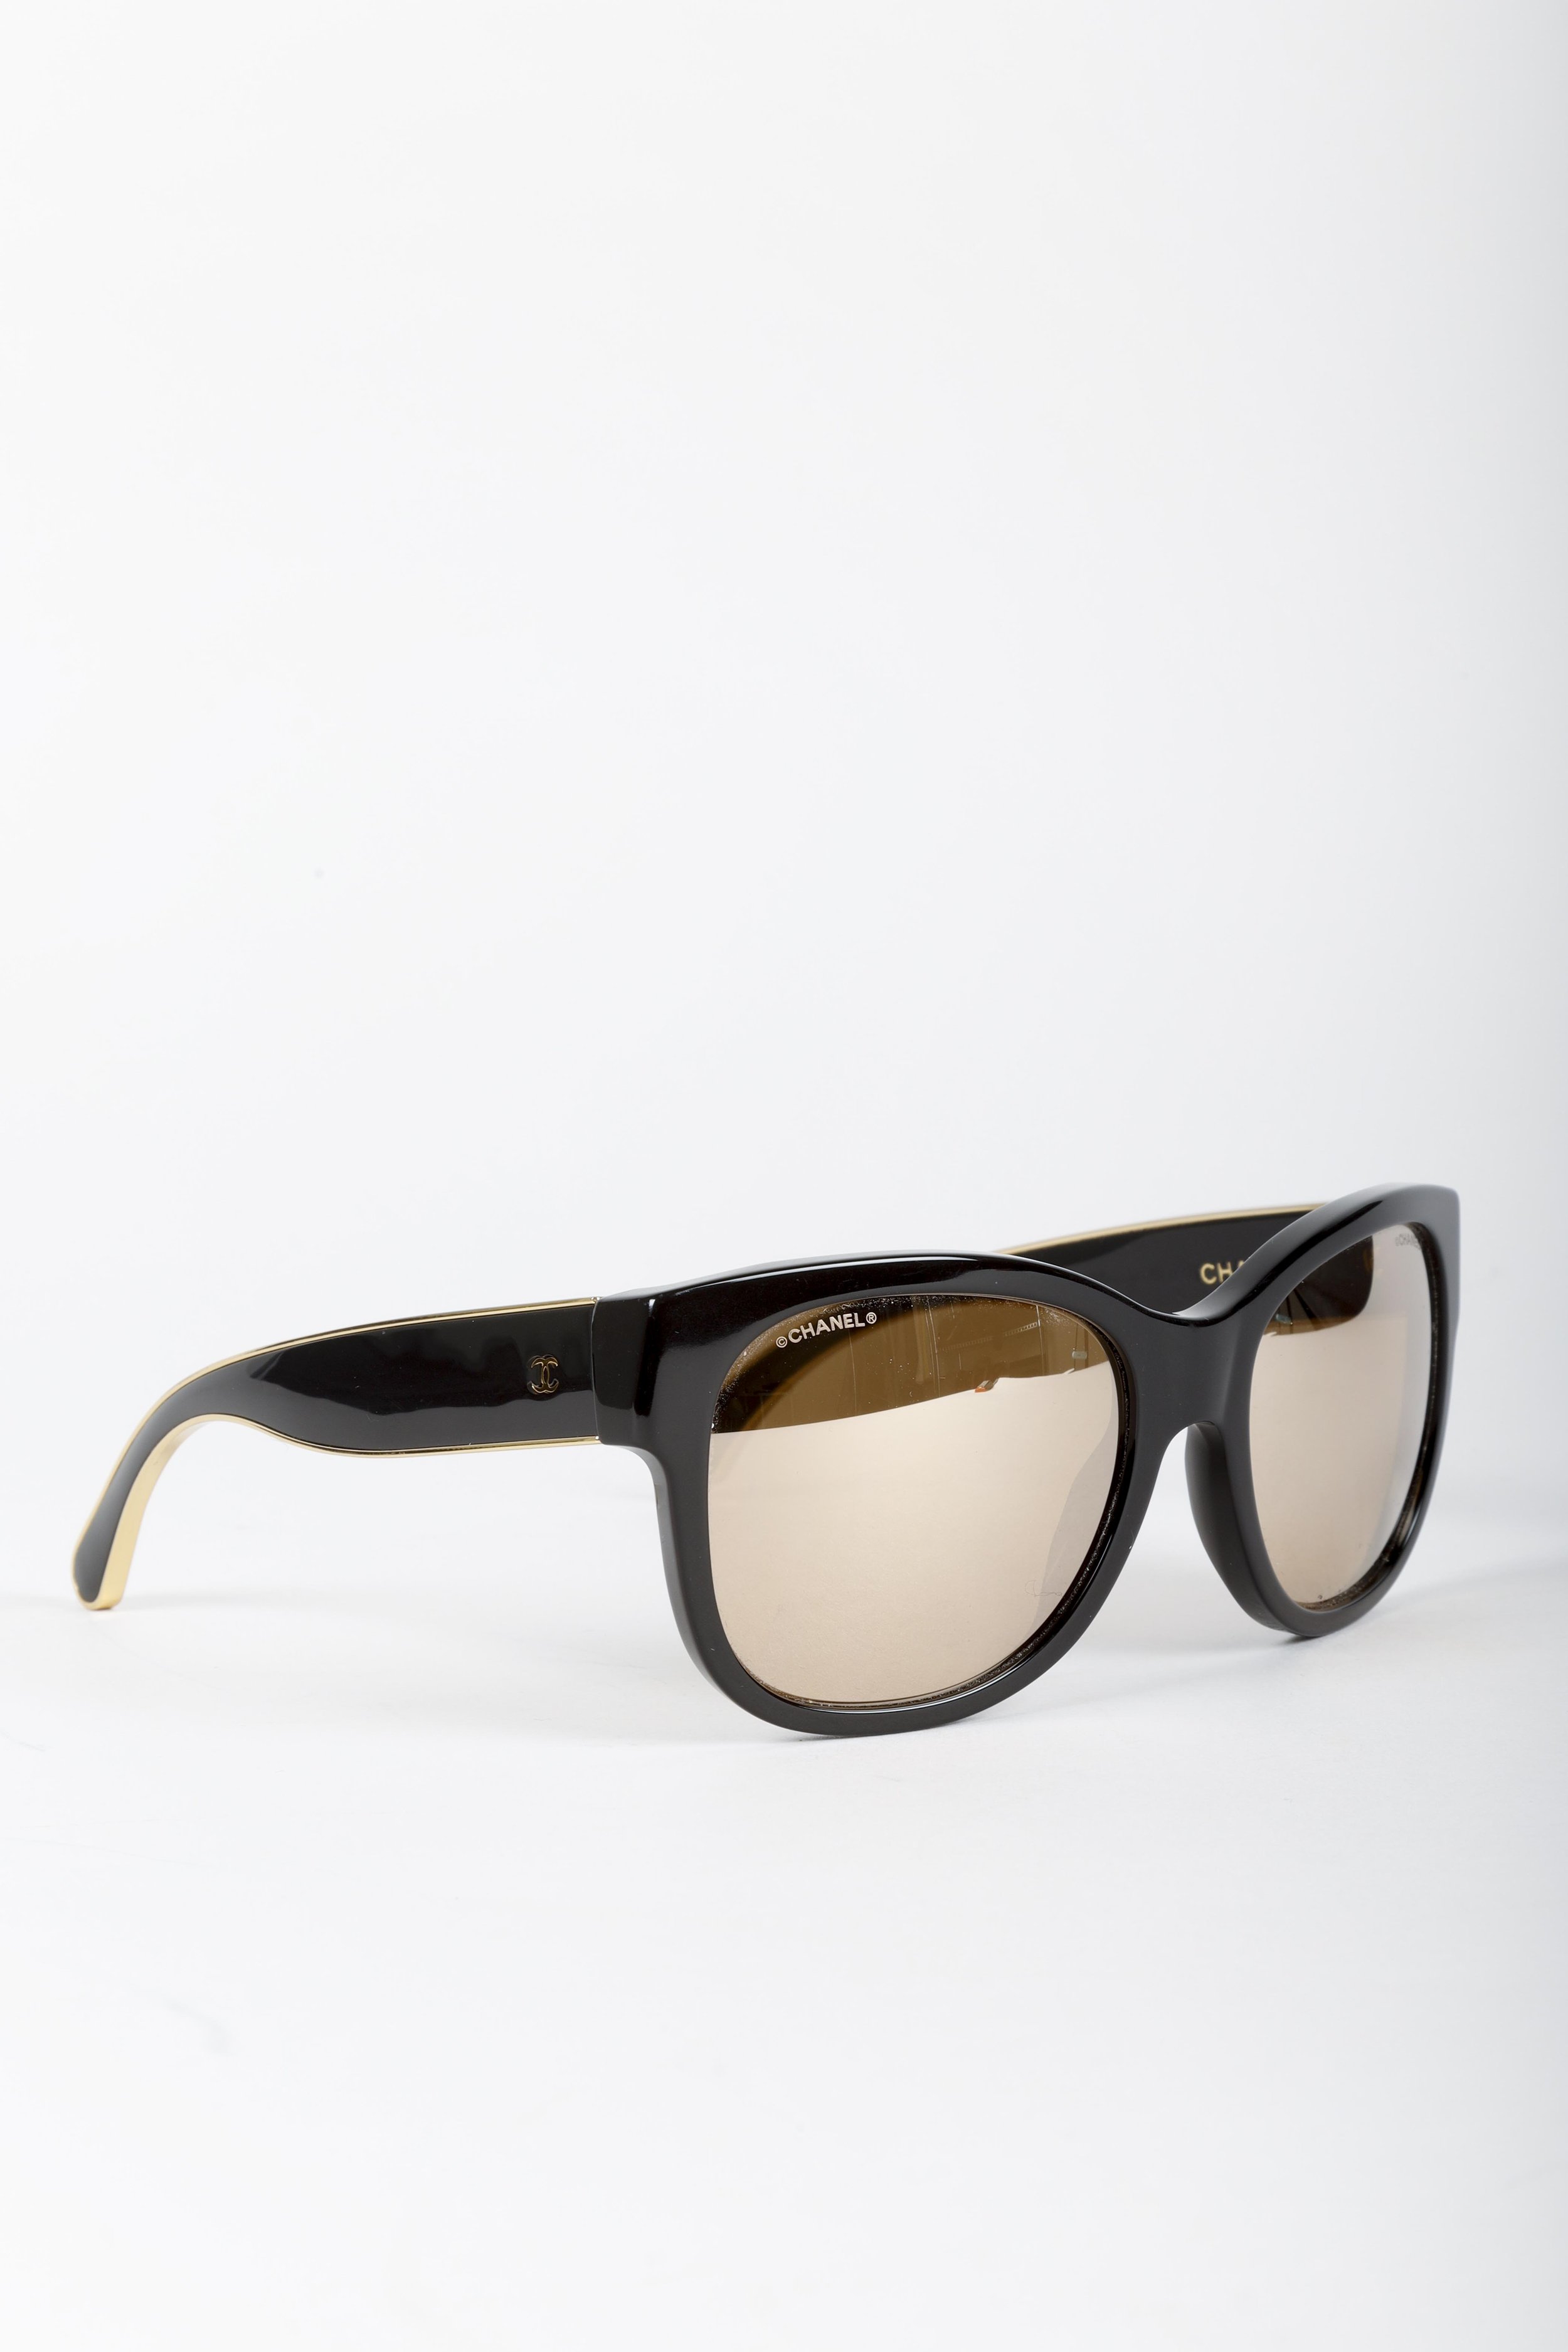 Chanel BlackRose Gold Mirrored 5369 Square Sunglasses Chanel  TLC